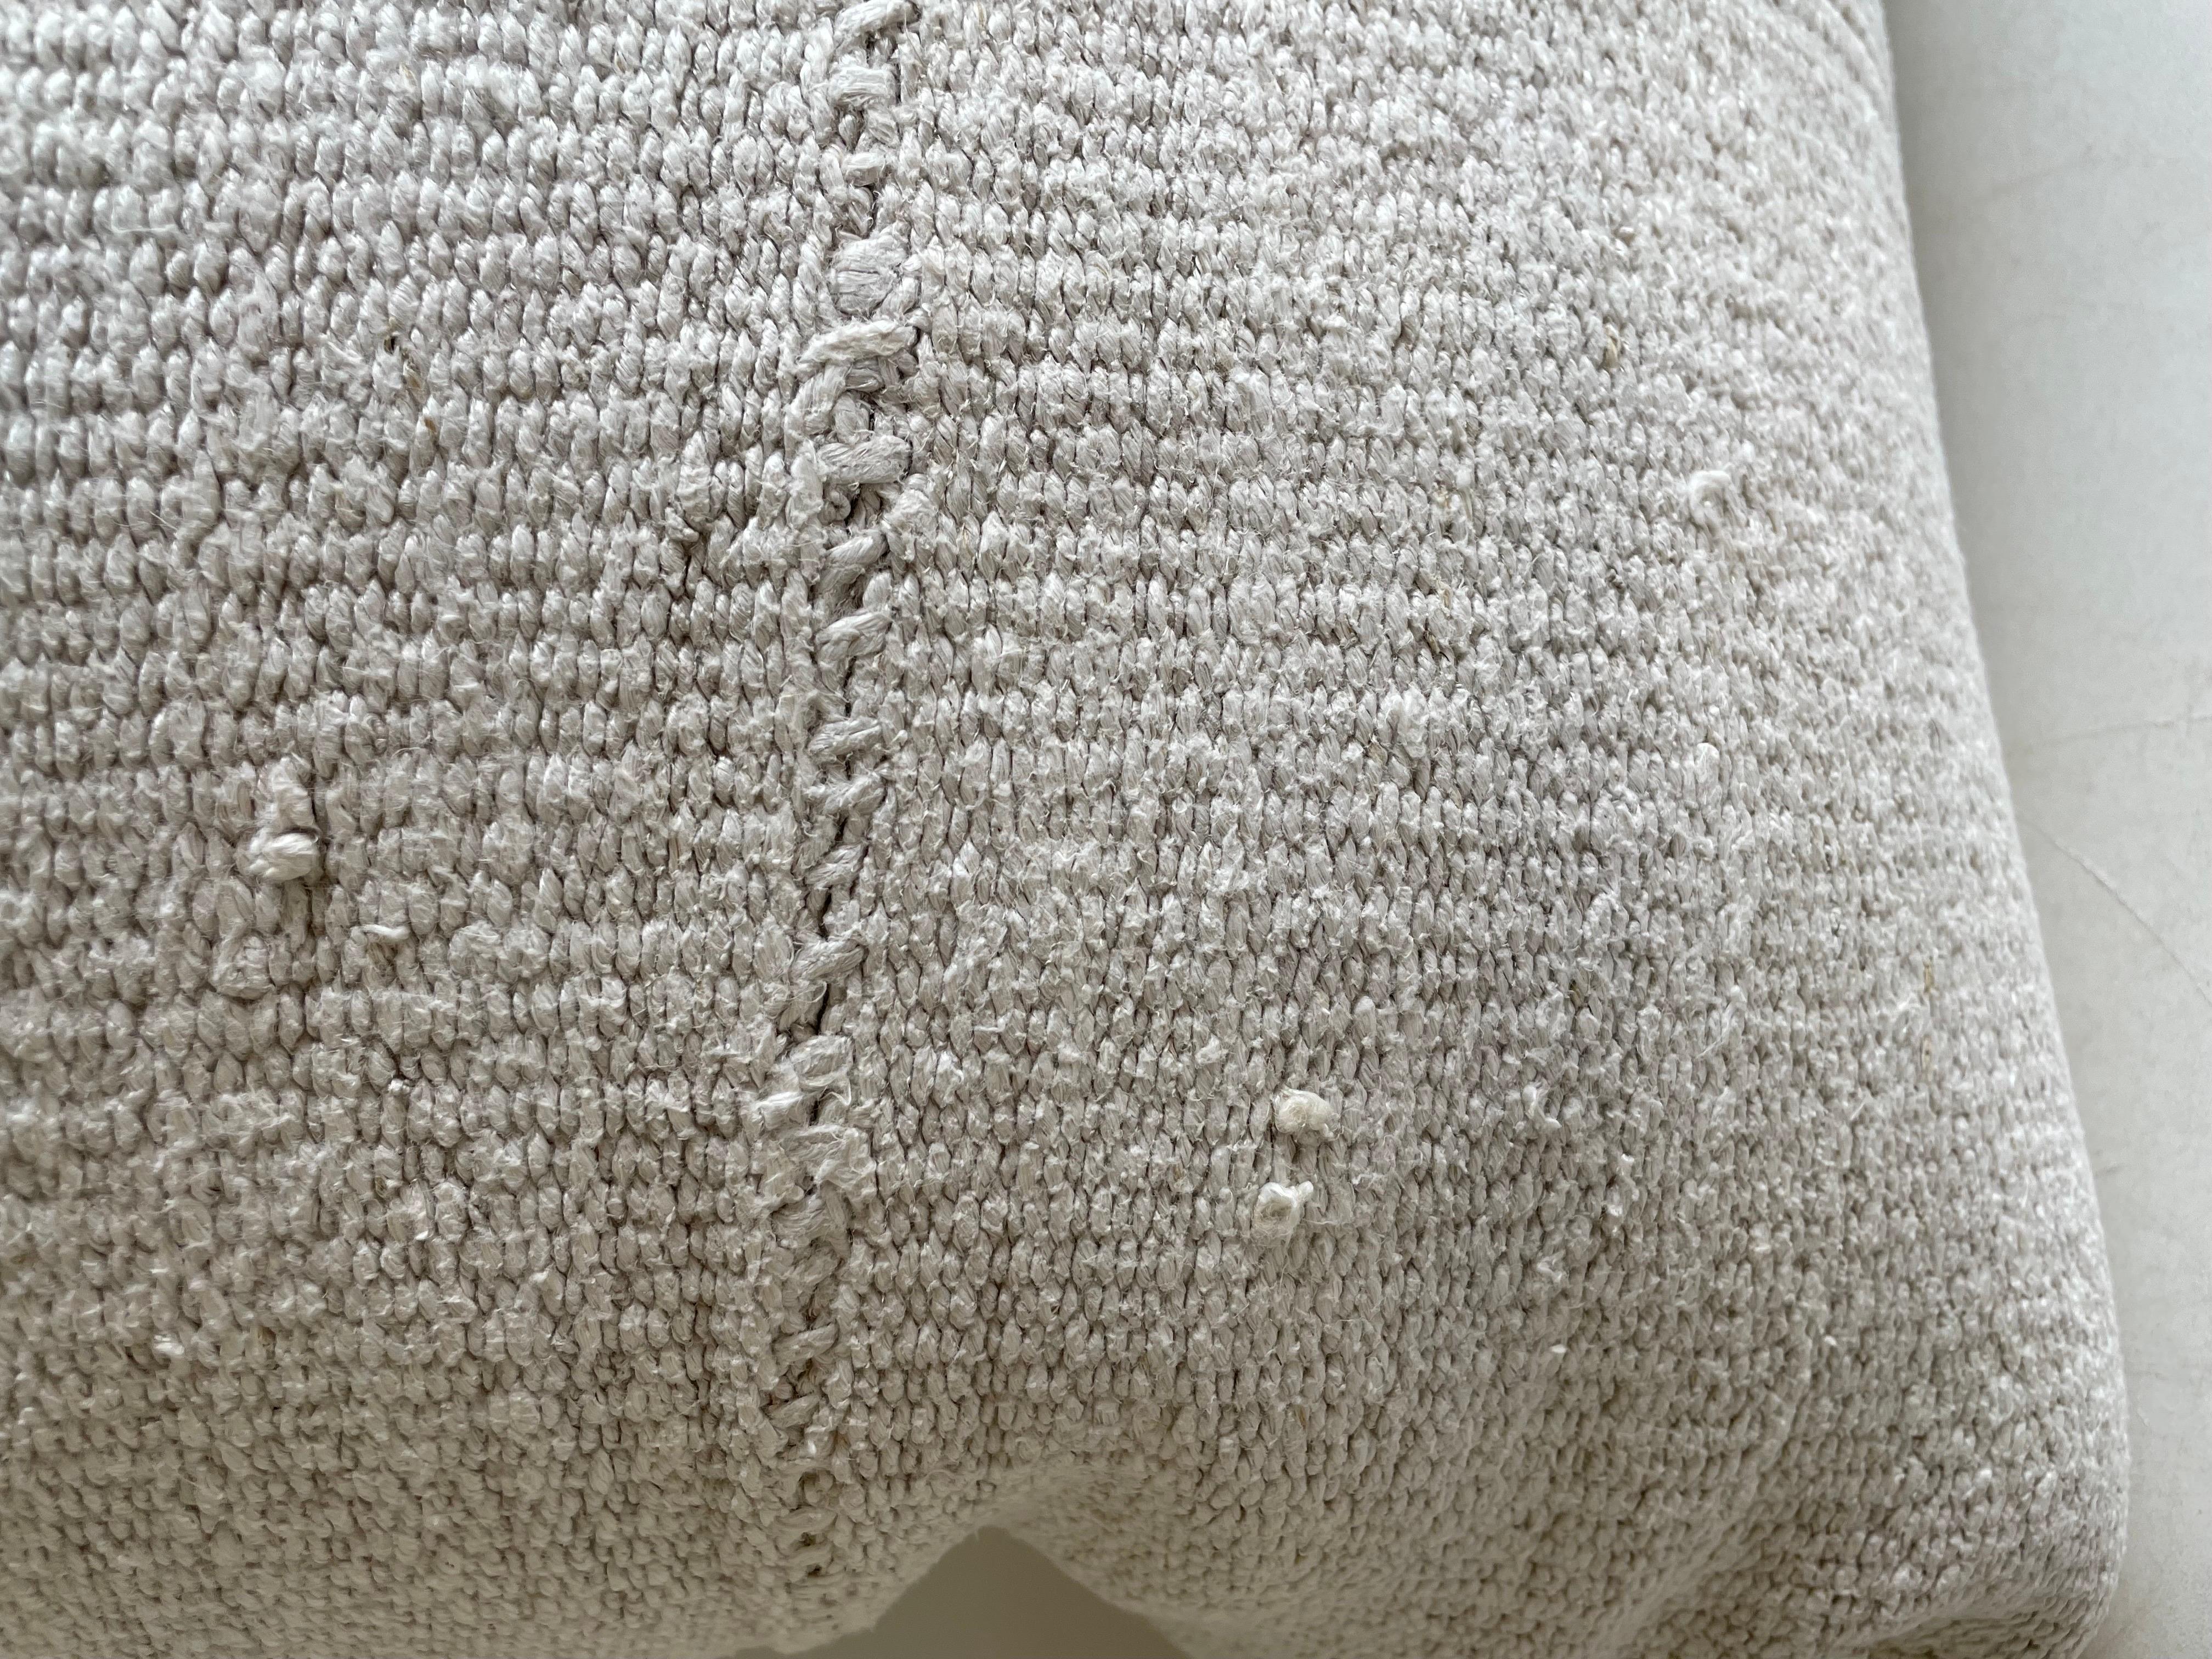 Cremefarbener weißer Hanfteppich im Patchwork-Stil. Einzigartiges Patchwork-Kissen, das aus Teilen verschiedener türkischer Teppiche in verschiedenen Weißtönen hergestellt wurde. Fester Stoff auf der Rückseite und verdeckter Reißverschluss. Es wird